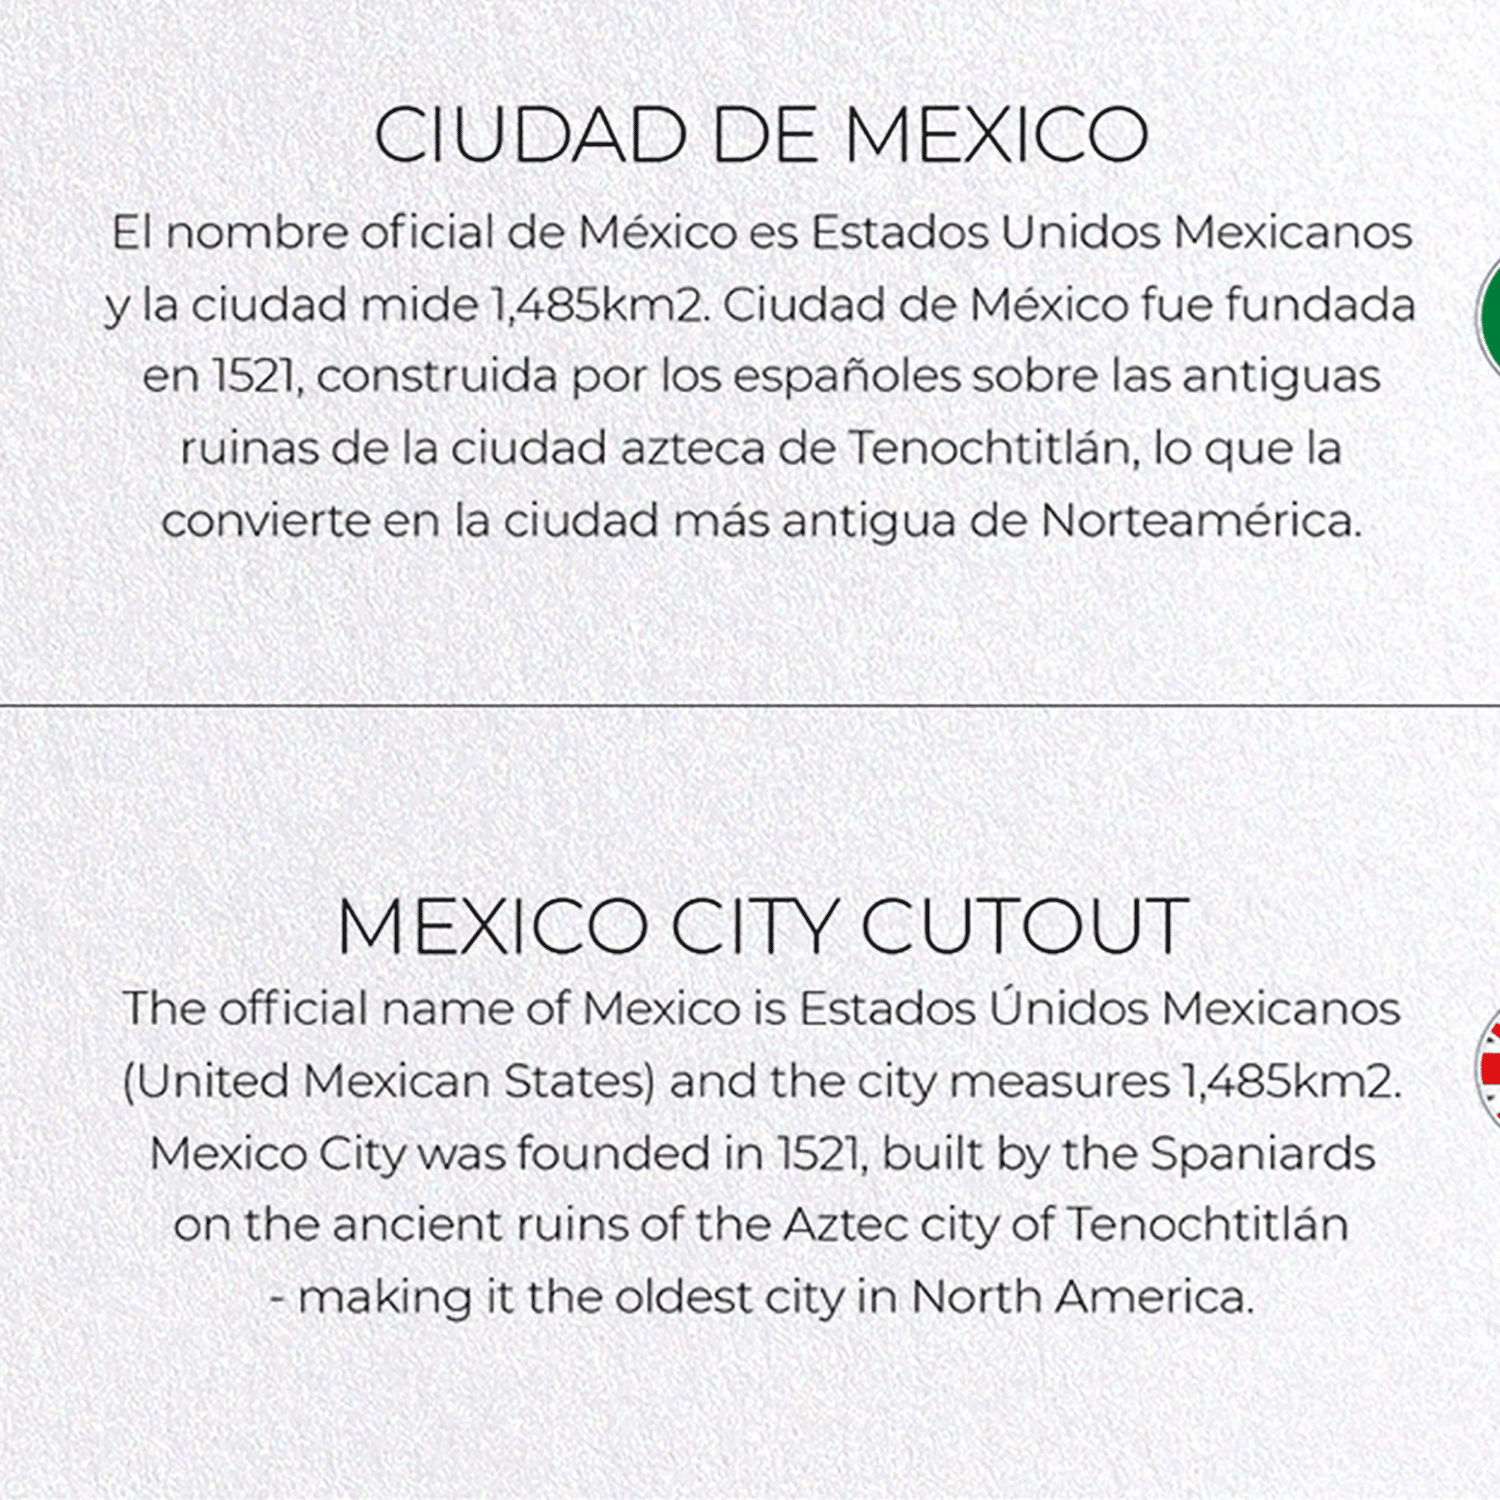 MEXICO CITY CUTOUT